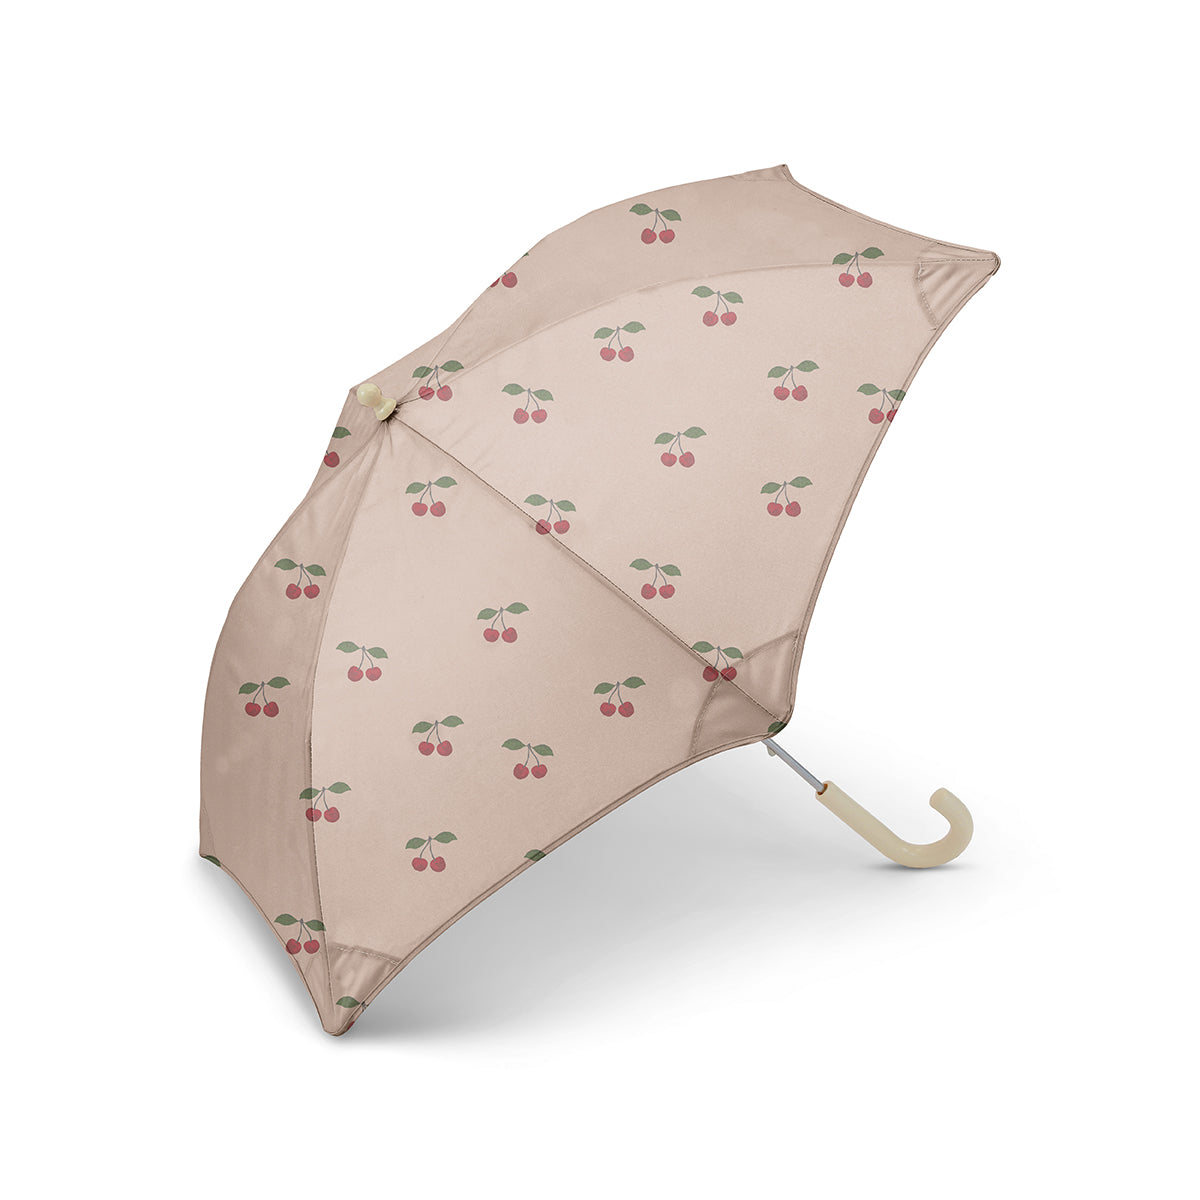 De regen in moeten is totaal geen probleem met deze leuke kinderparaplu van Konges Slojd. De paraplu ma grande cerise heeft een schattig design van grote kersen, dat elke grauwe dag opfleurt. VanZus